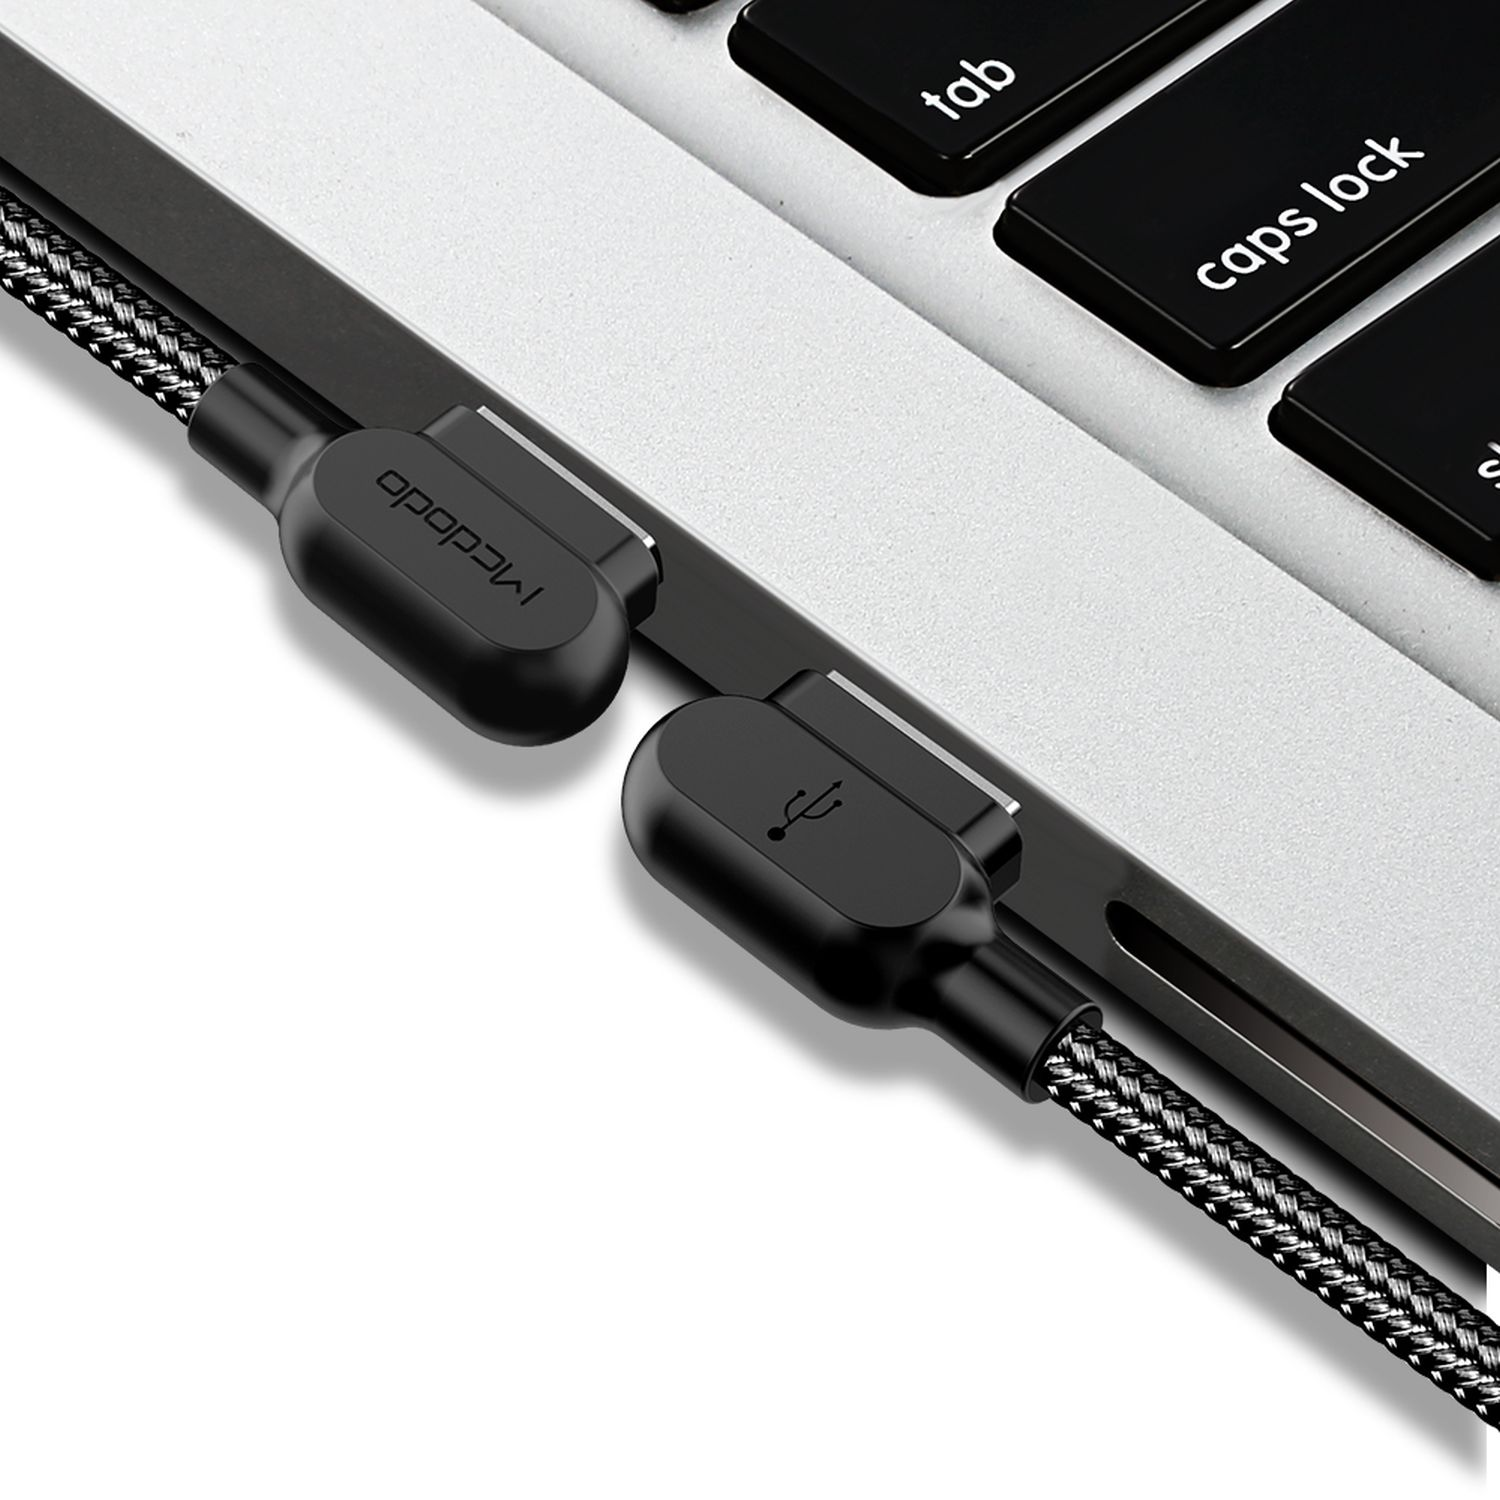 Schwarz auf 1,8m C 90° Ladekabel, MCDODO Typ USB Datenkabel, L-Form USB-A geflochten